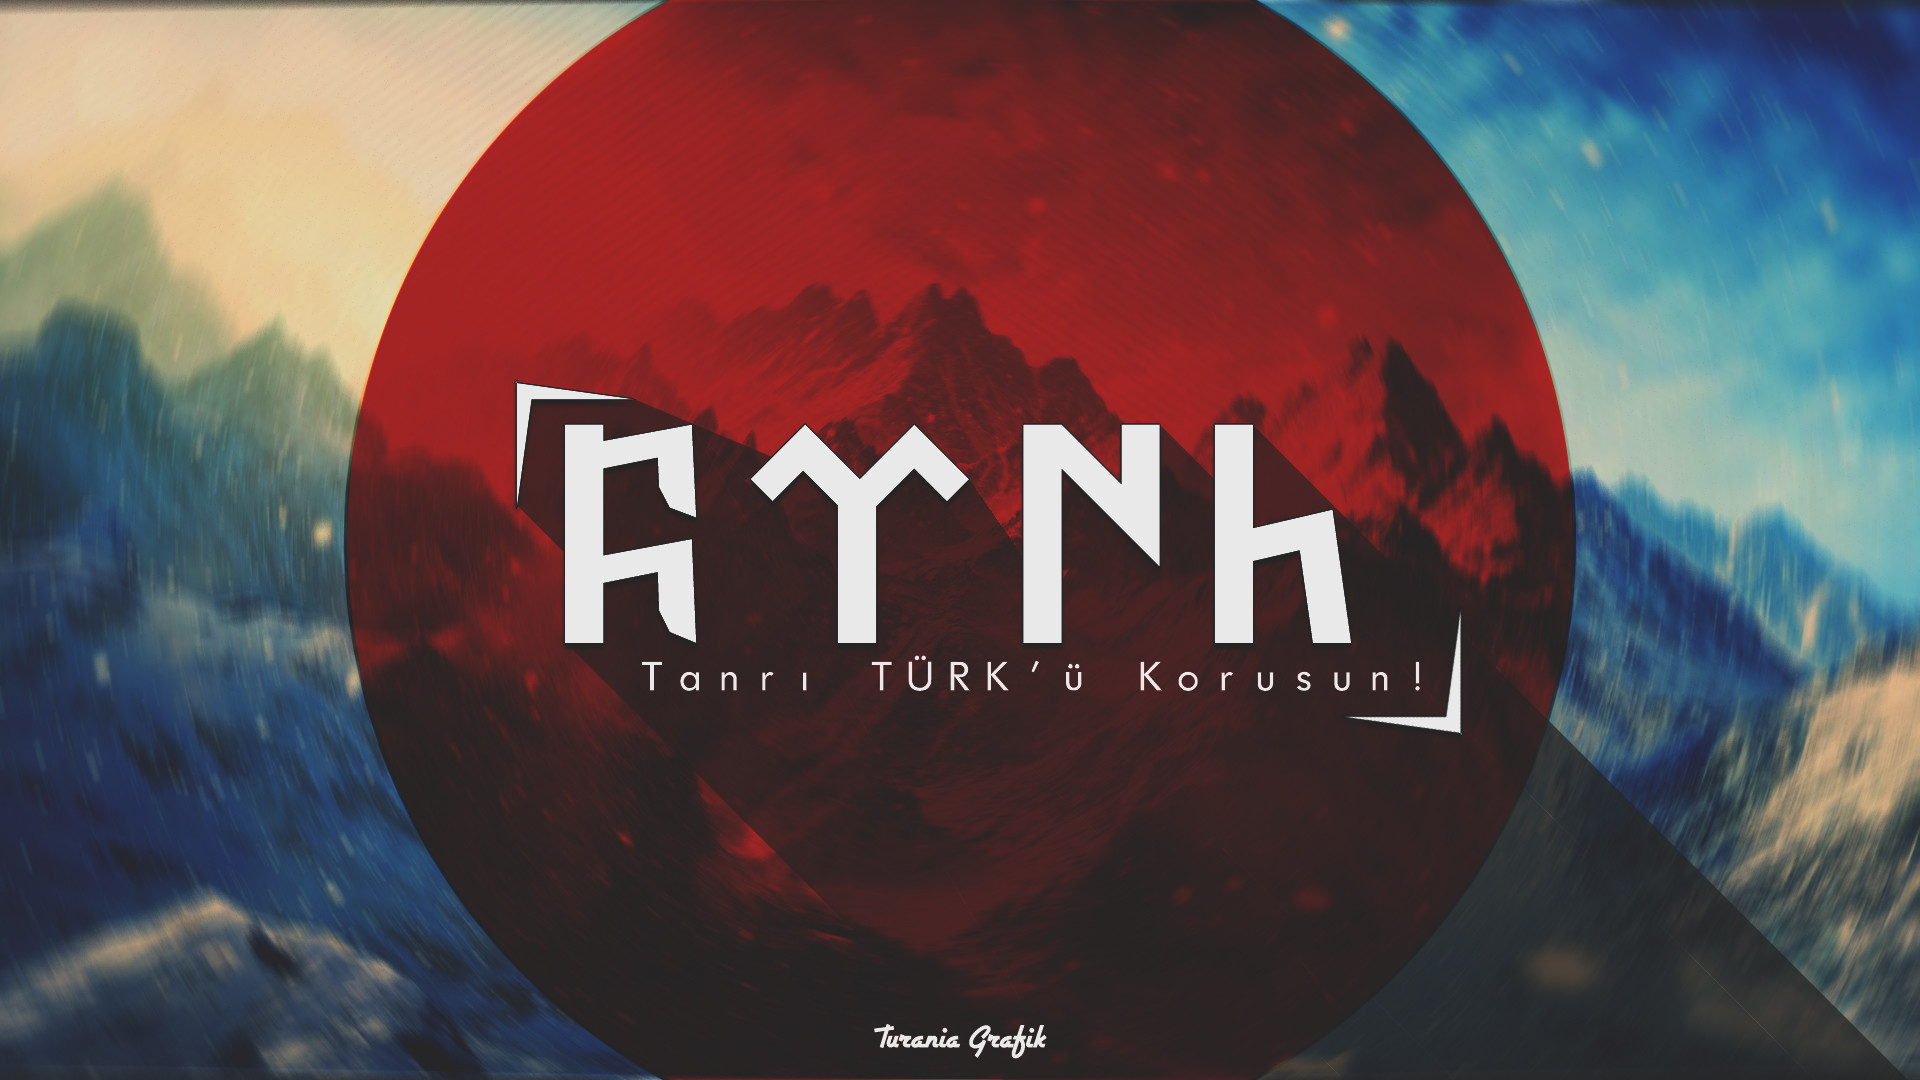 türk wallpaper,font,text,sky,logo,world